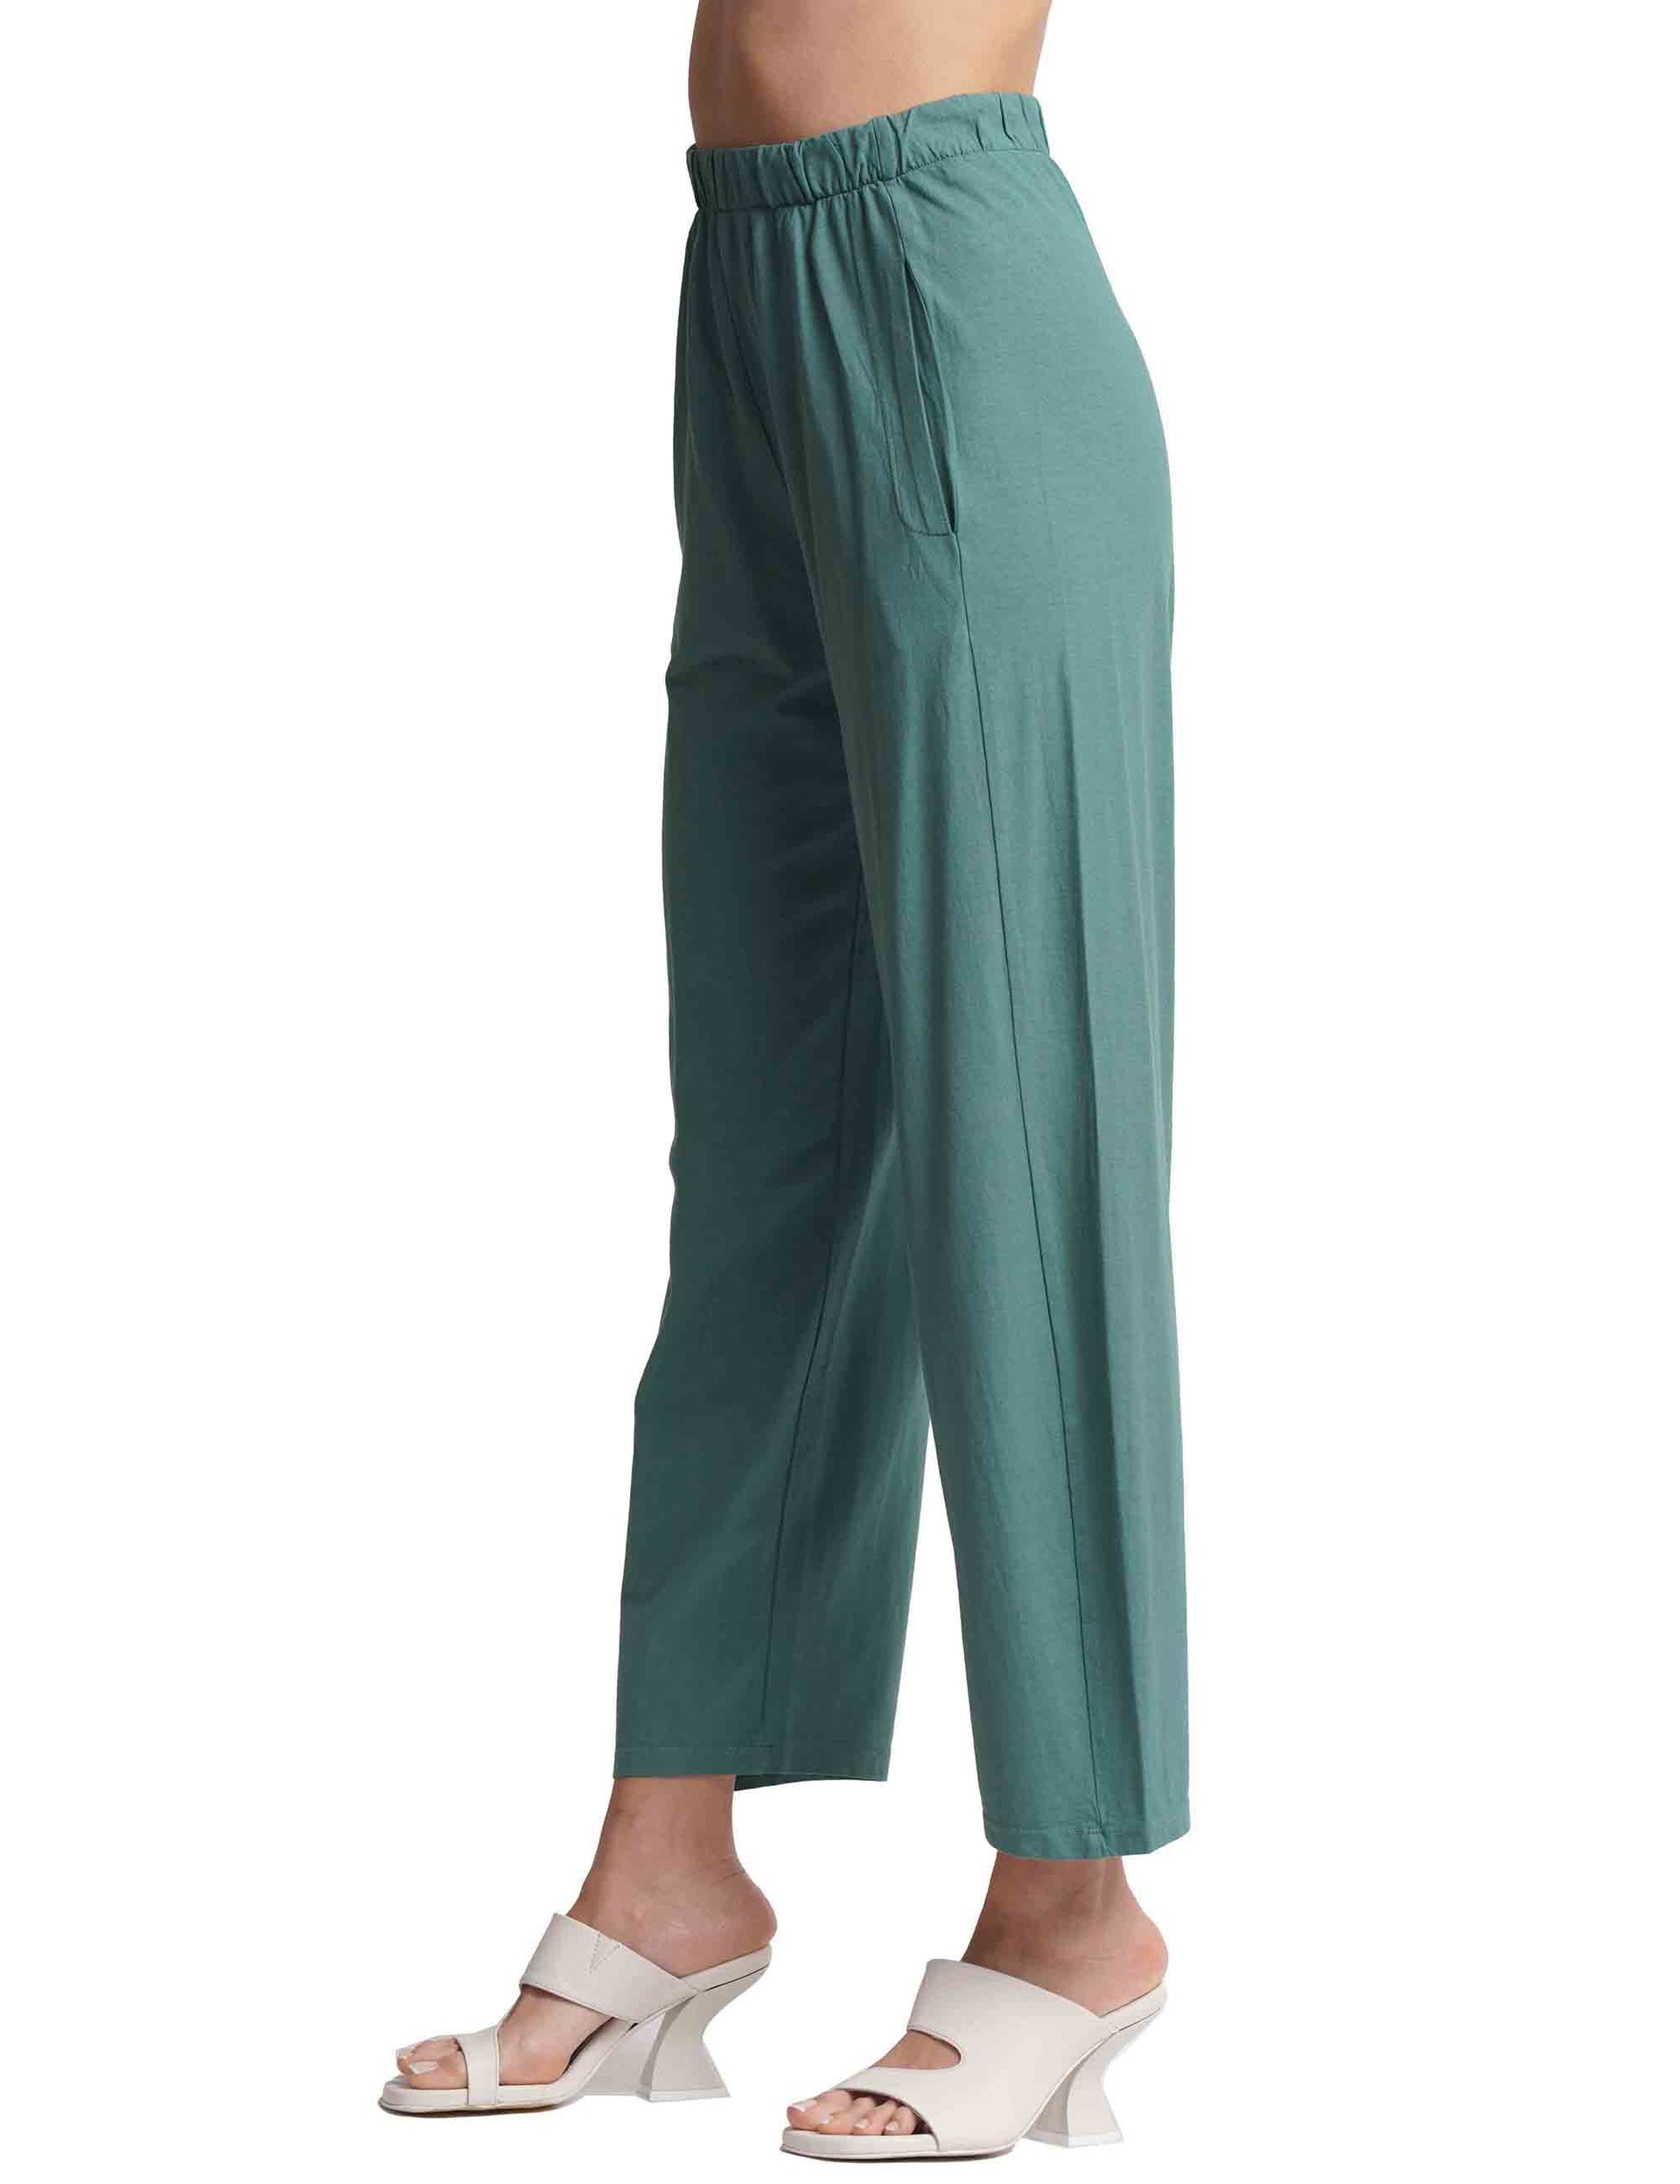 Pantaloni donna in cotone verde con elastico in vita e tasche alla francese